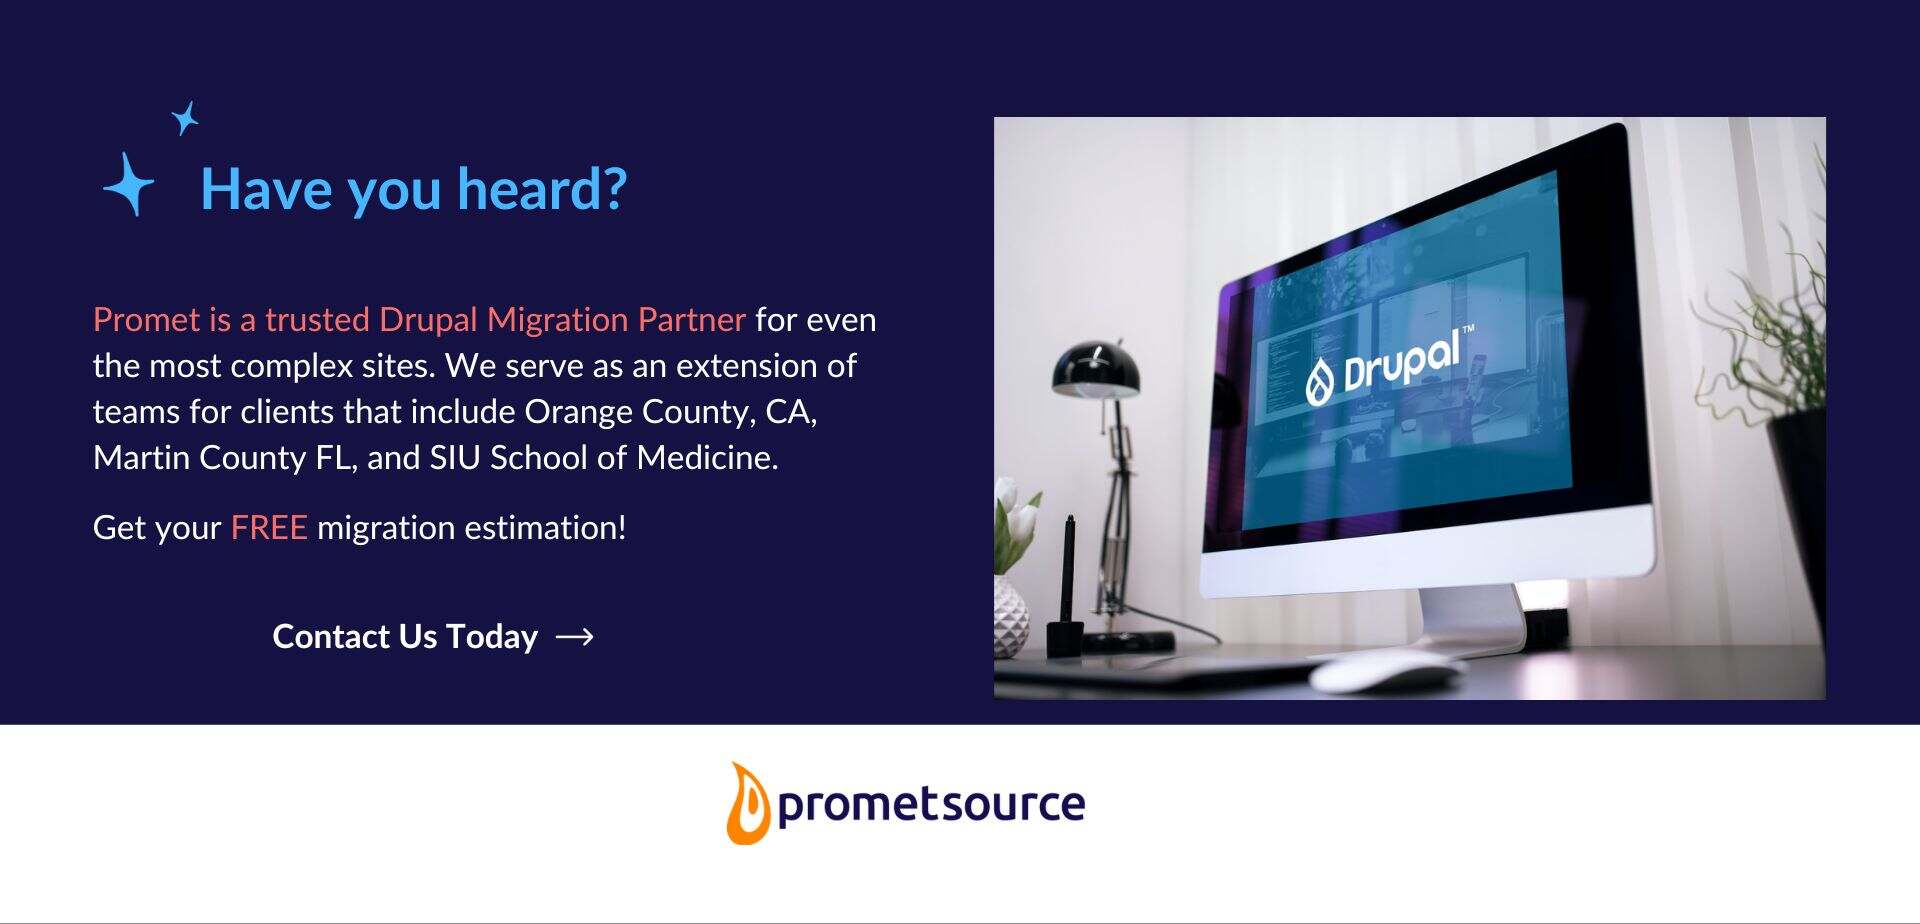 Promet is a trusted Drupal migration partner